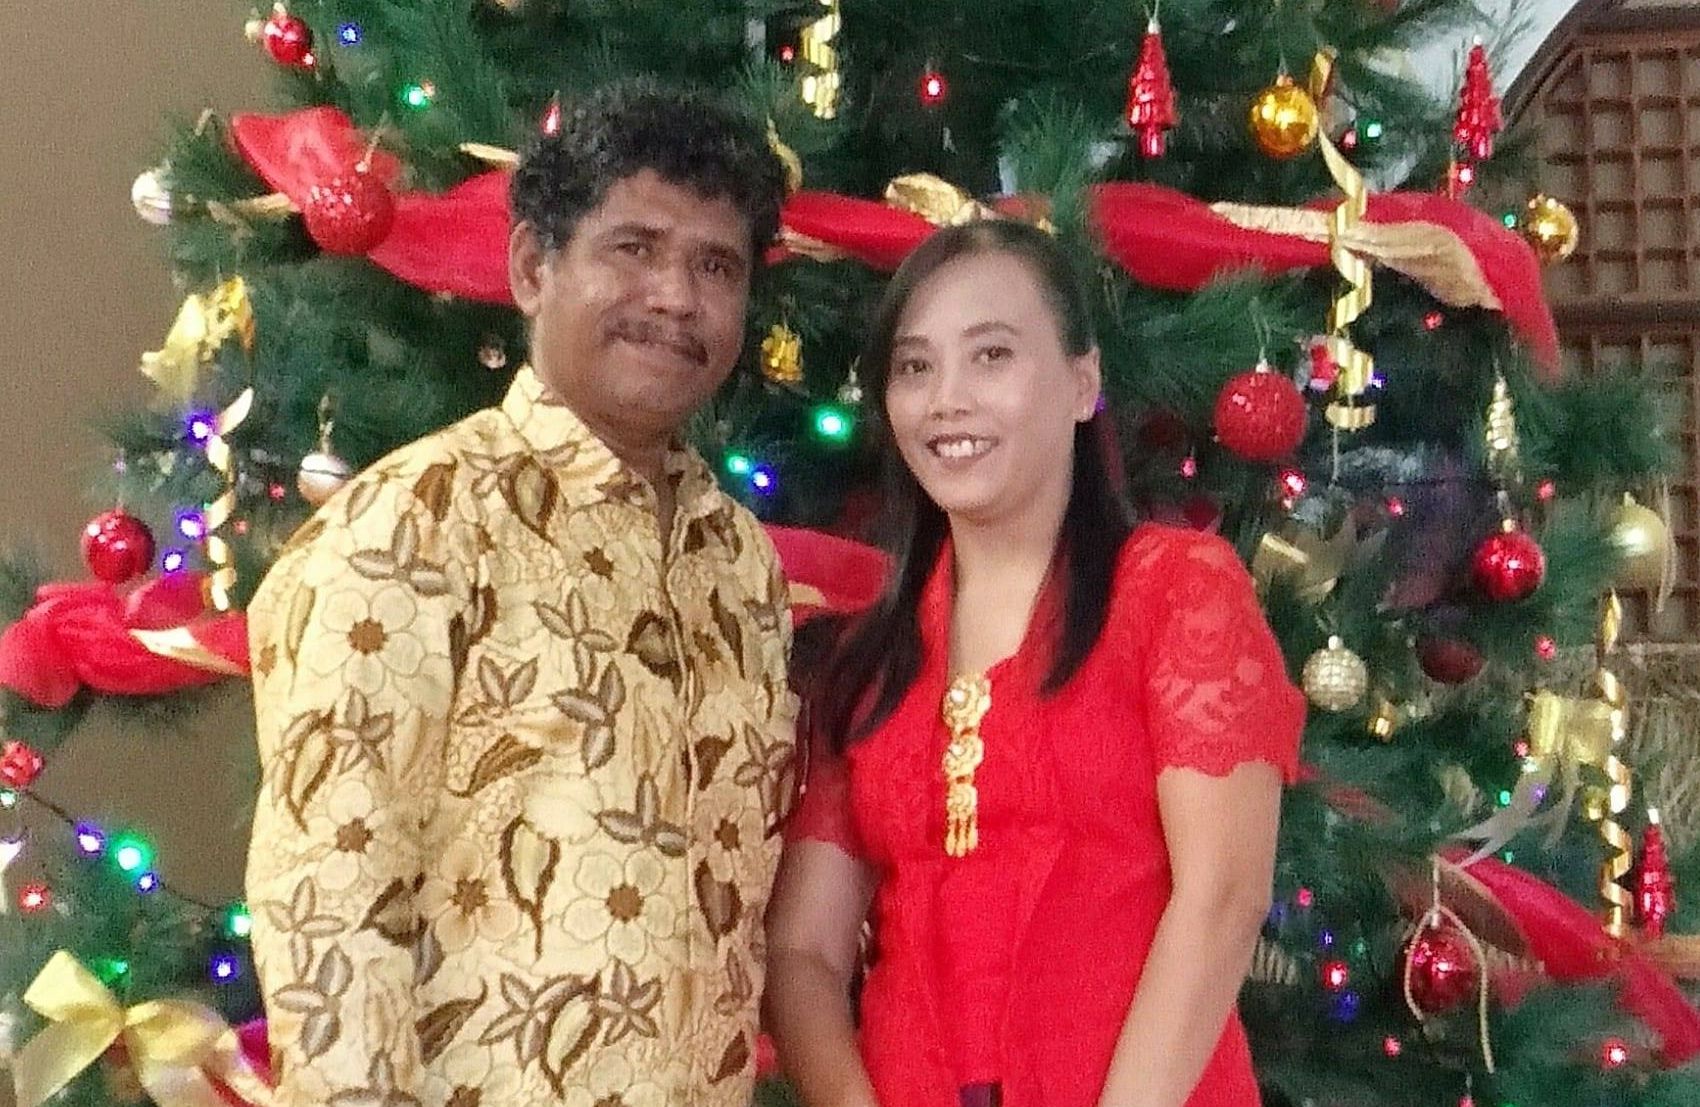 Om Agus Puka bersam istrinya ketika merayakan Natal bersama.